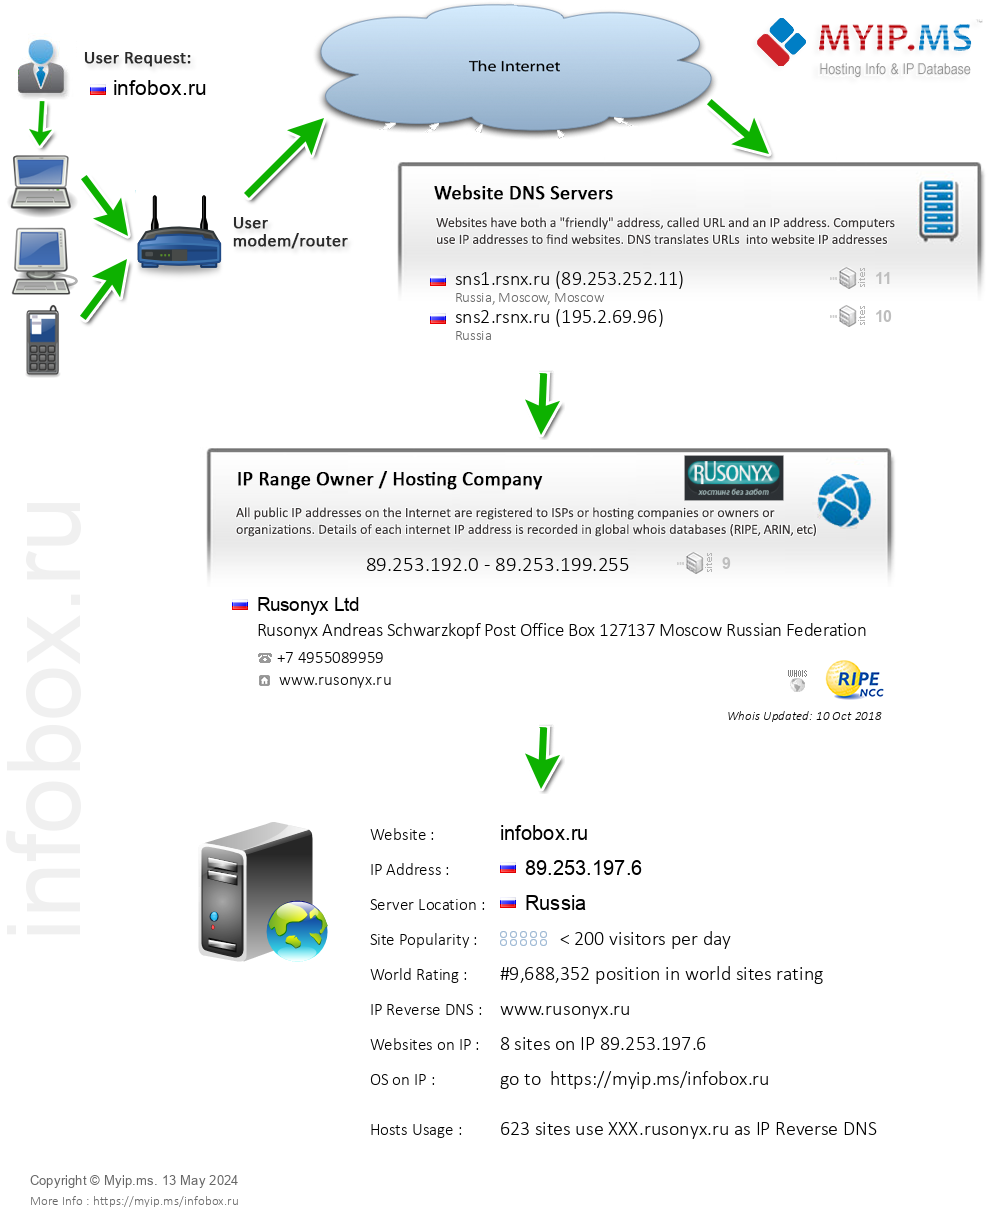 Infobox.ru - Website Hosting Visual IP Diagram